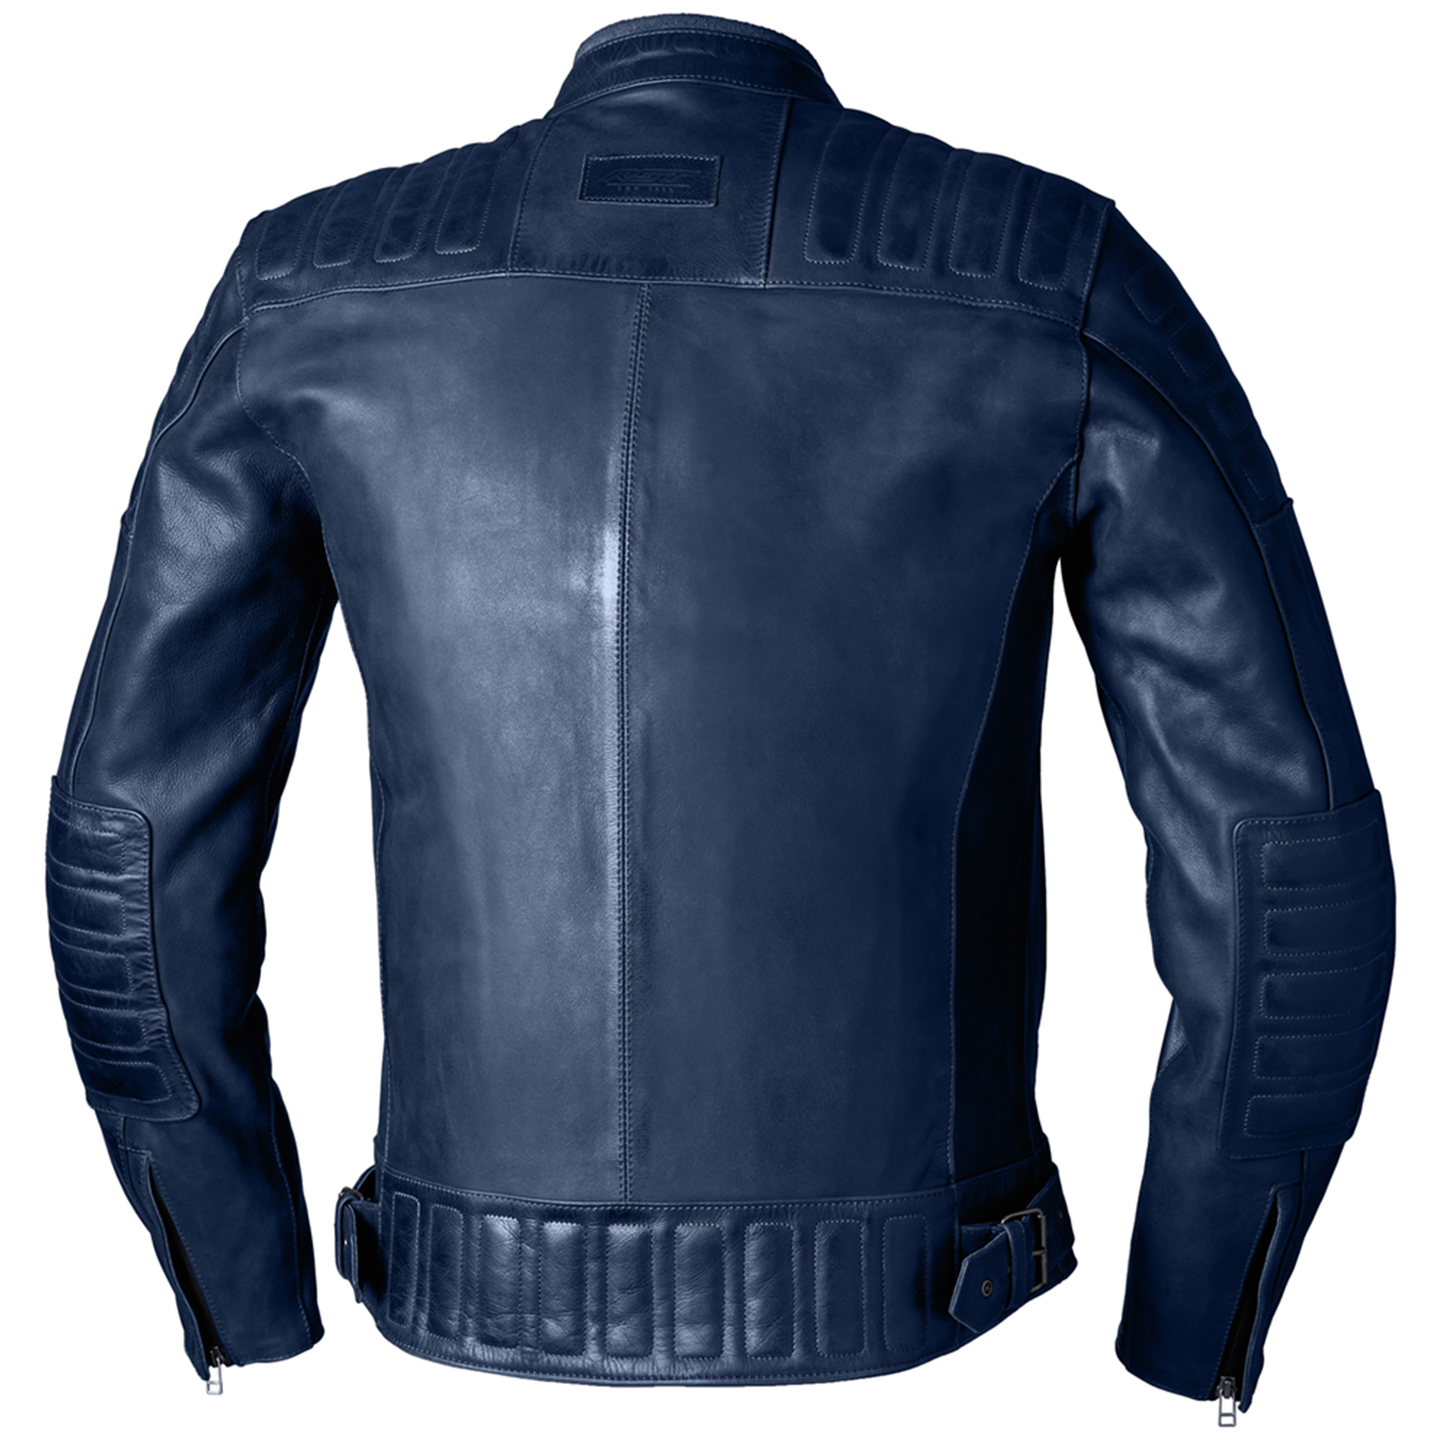 RST IOM TT Brandish 2 (CE) Leather Jacket - Petrol